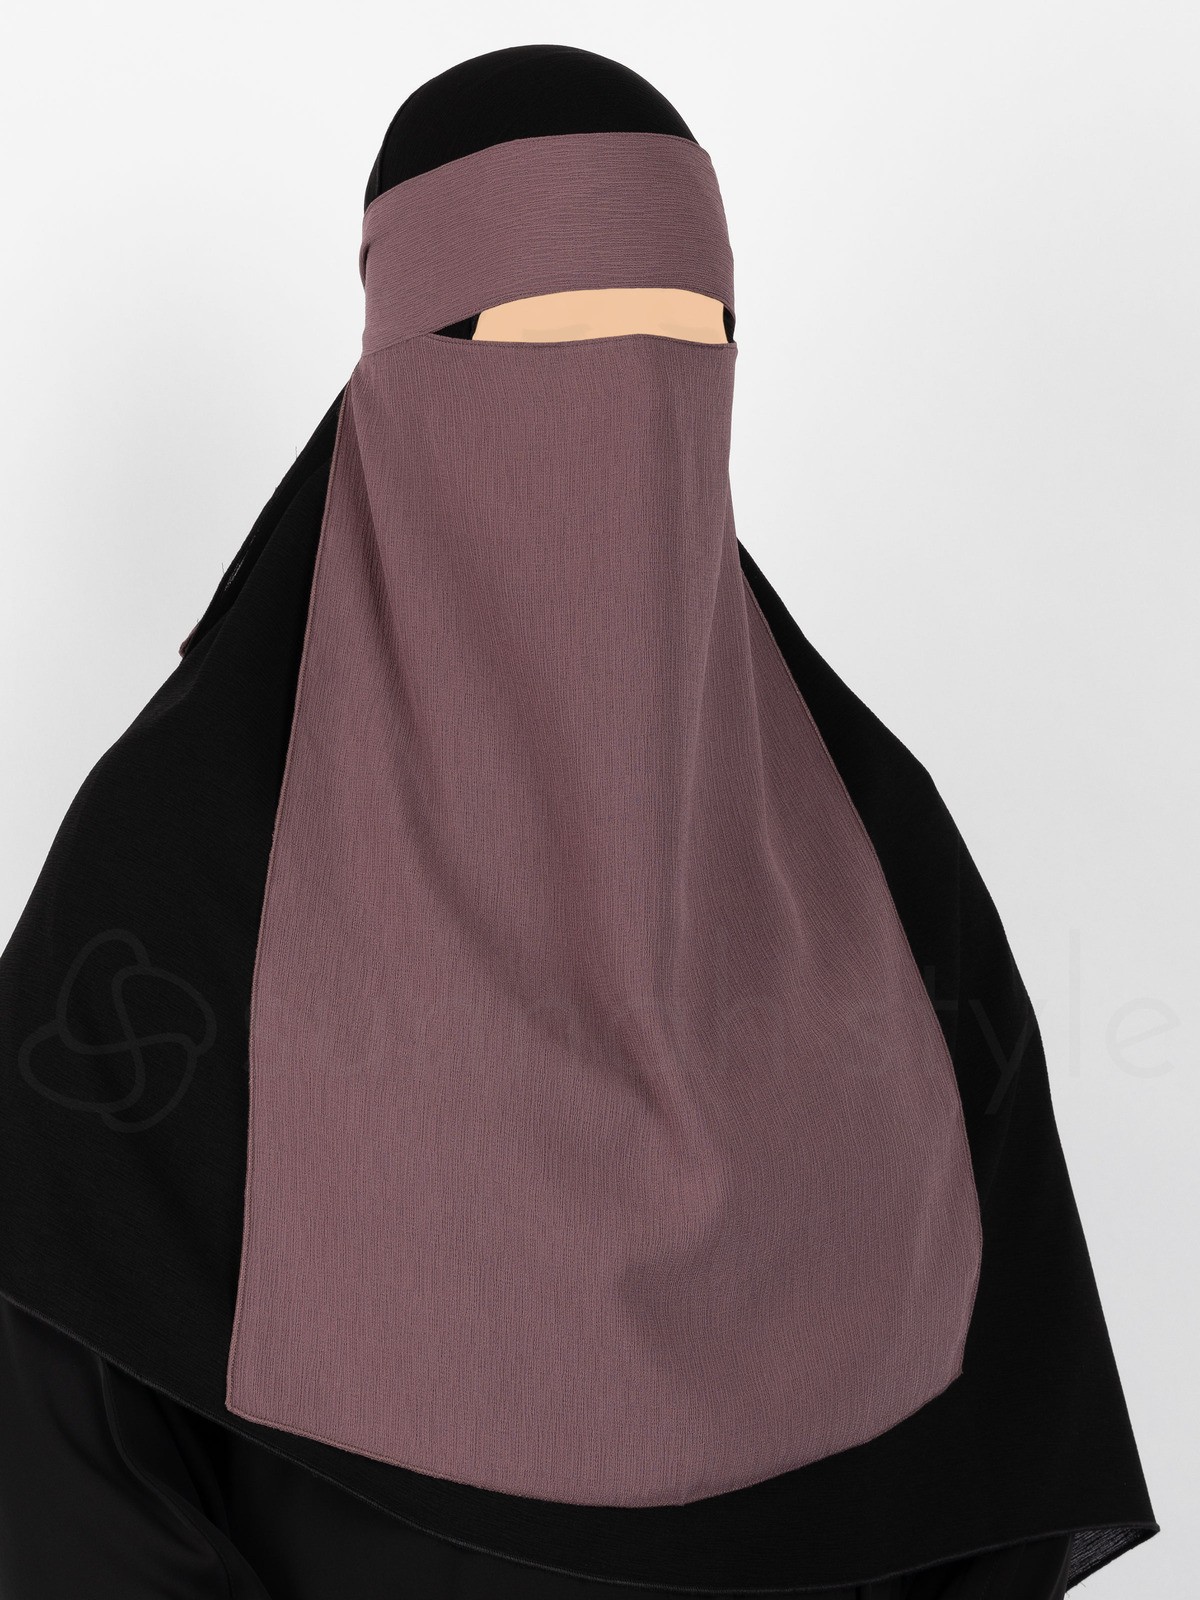 Sunnah Style - Brushed One Layer Niqab (Twilight Mauve)